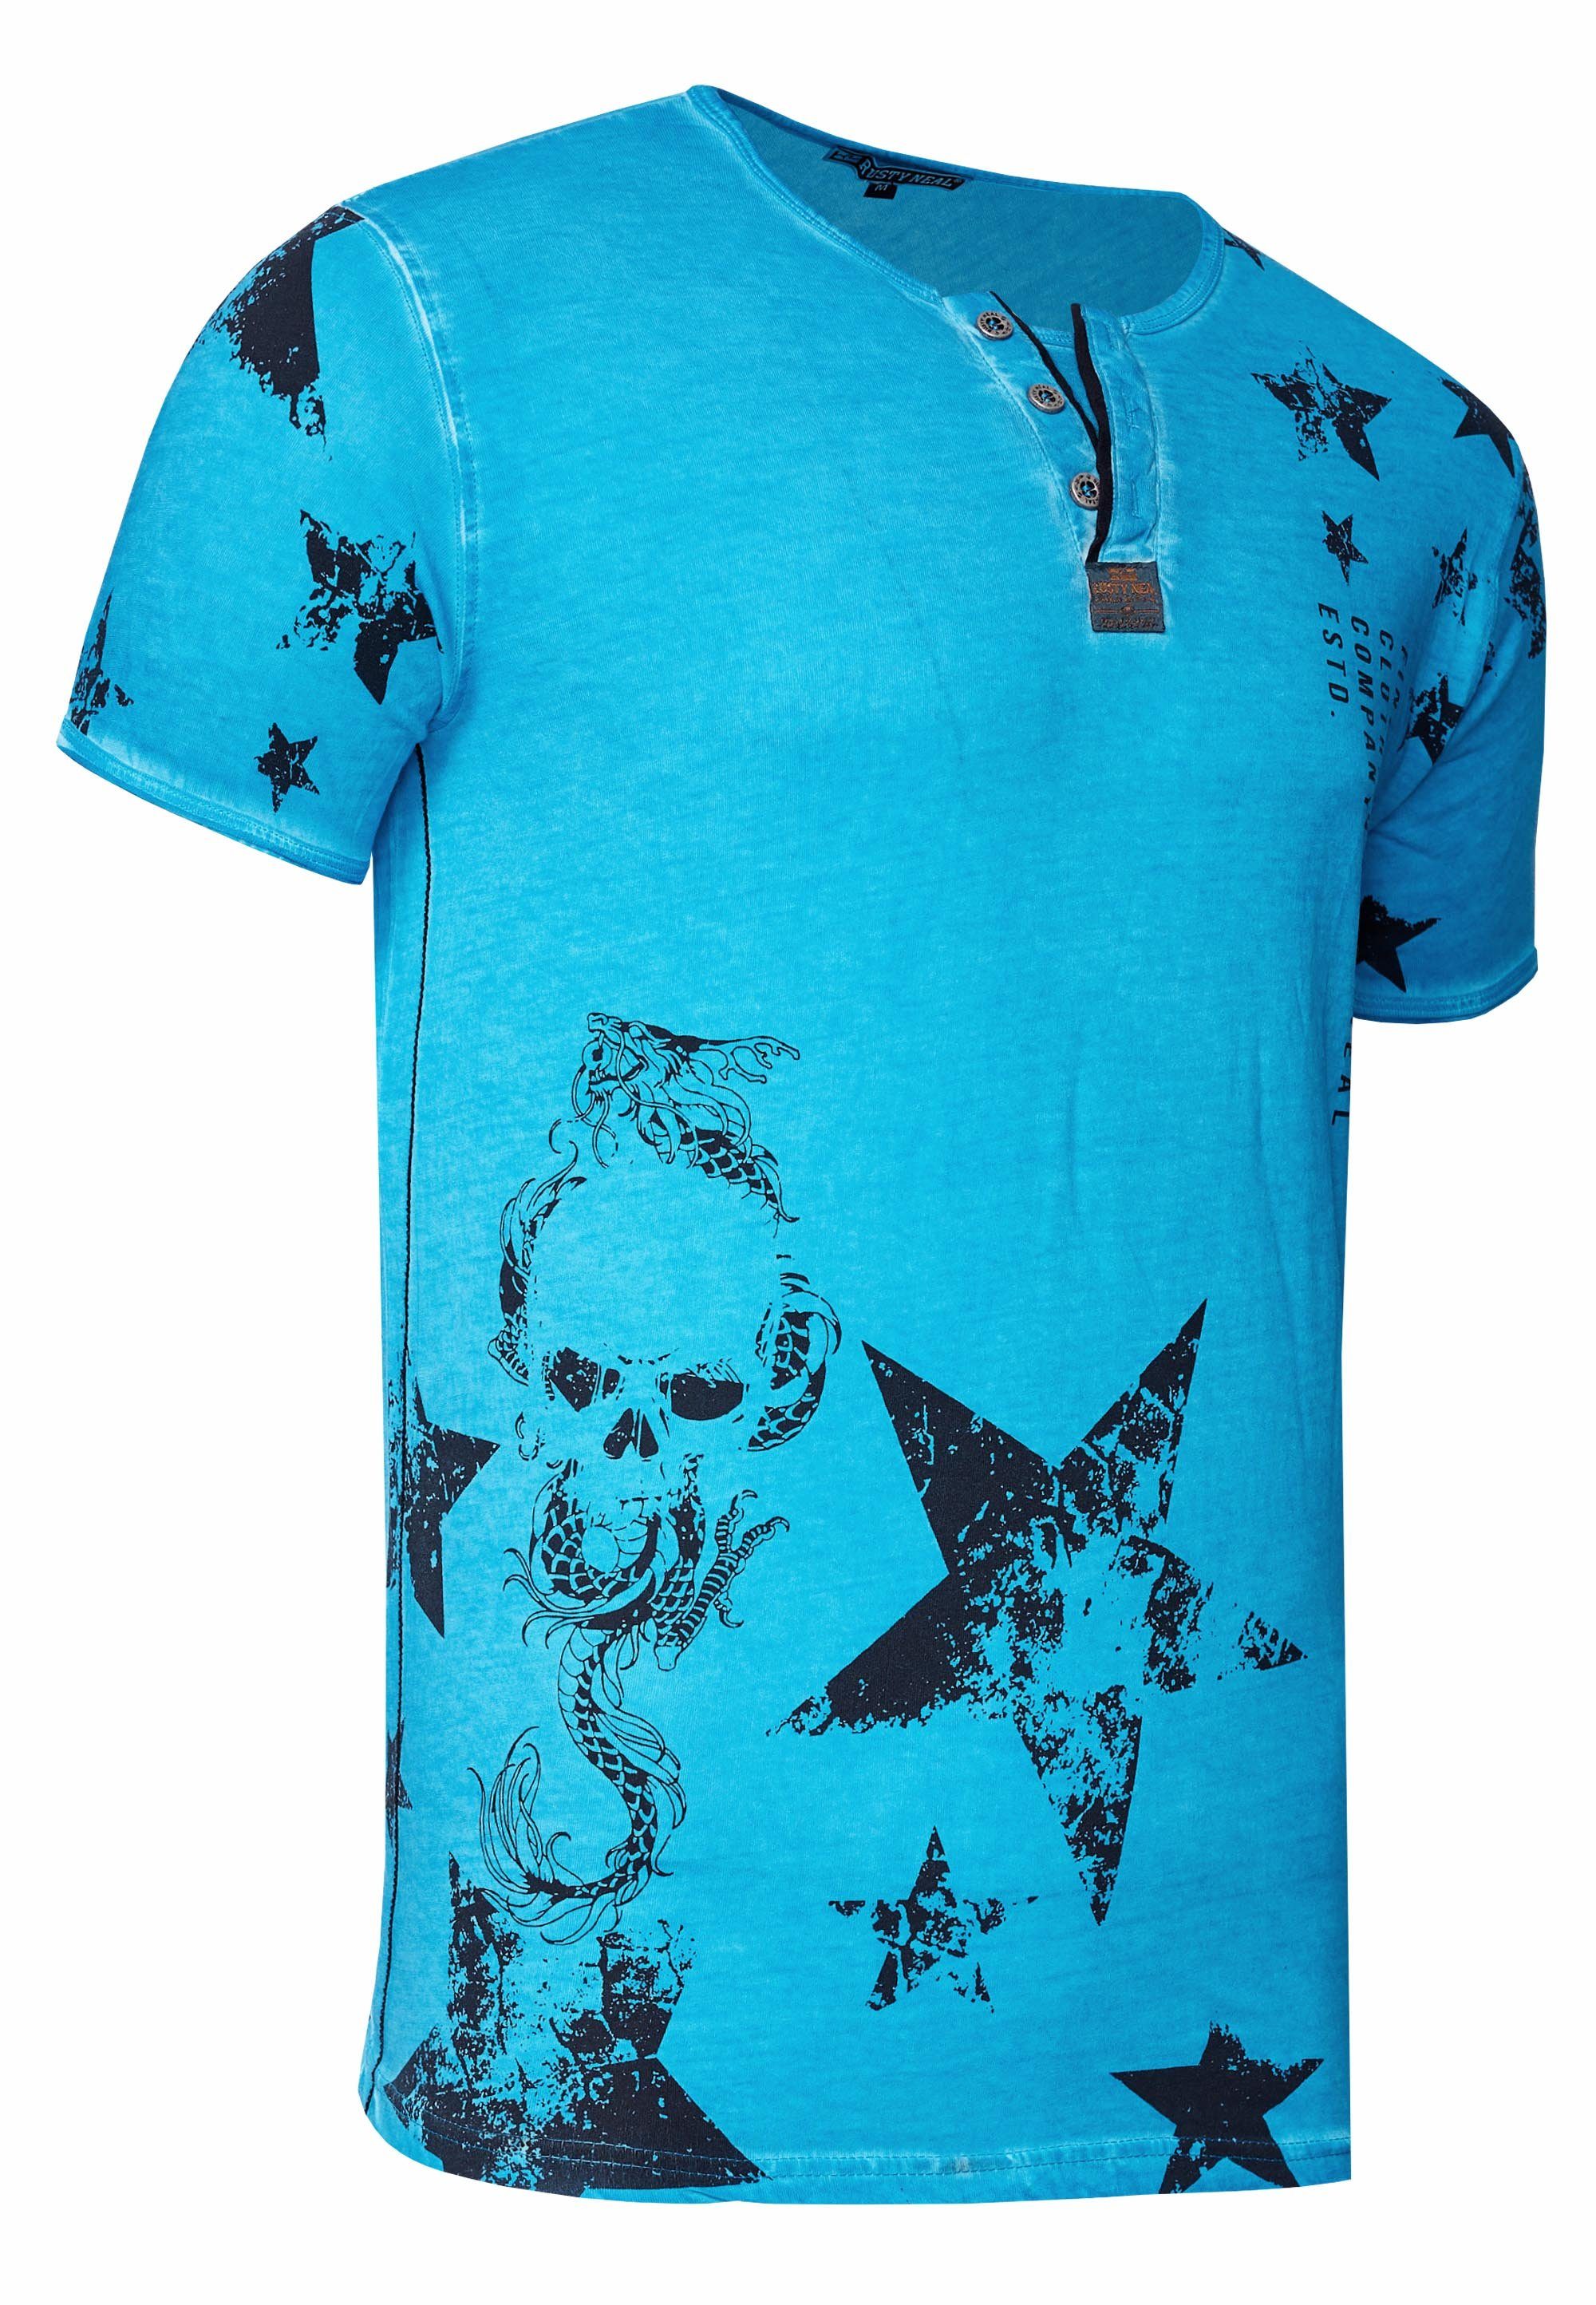 Rusty Neal T-Shirt mit Knopleiste Skull-Print und schwarz